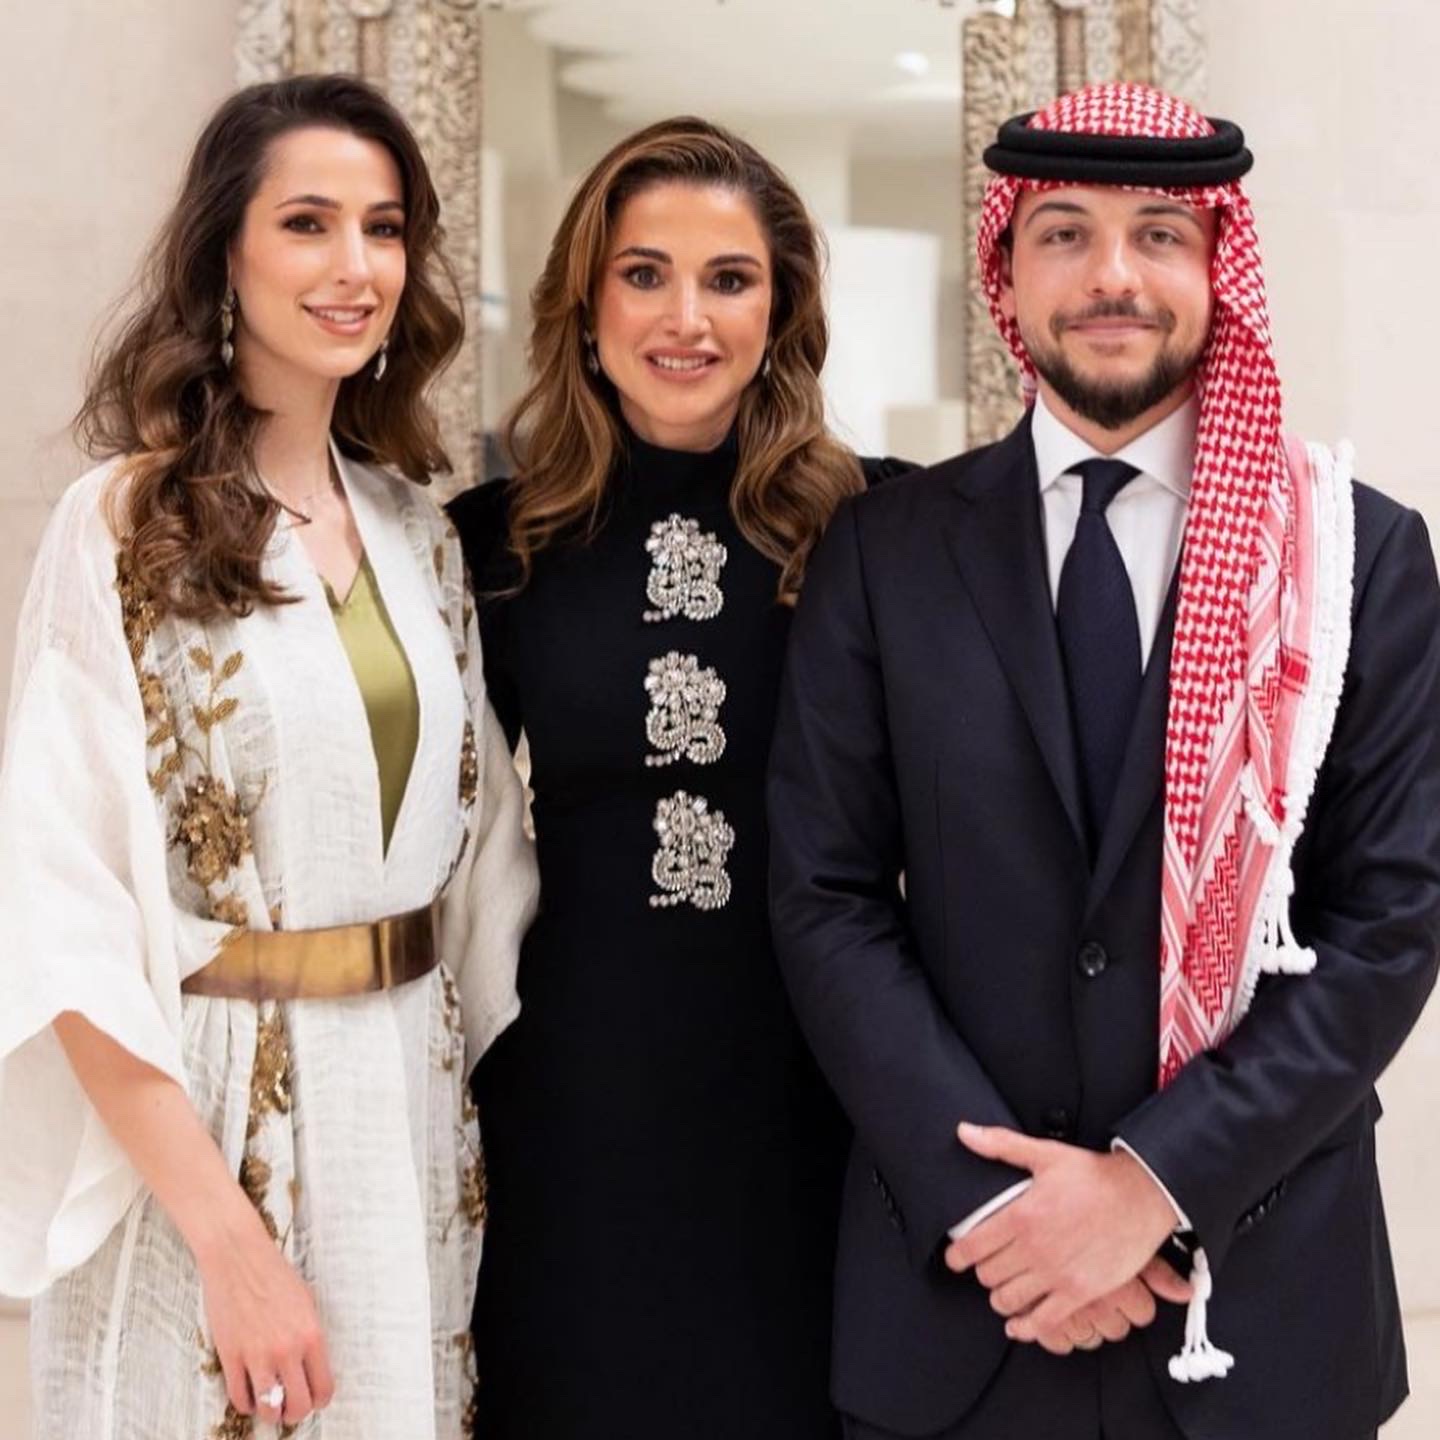 Jordans kronprins Hussein bin Abdullah IIs förlovning med den unga kvinnan Rajwa Al-Saif